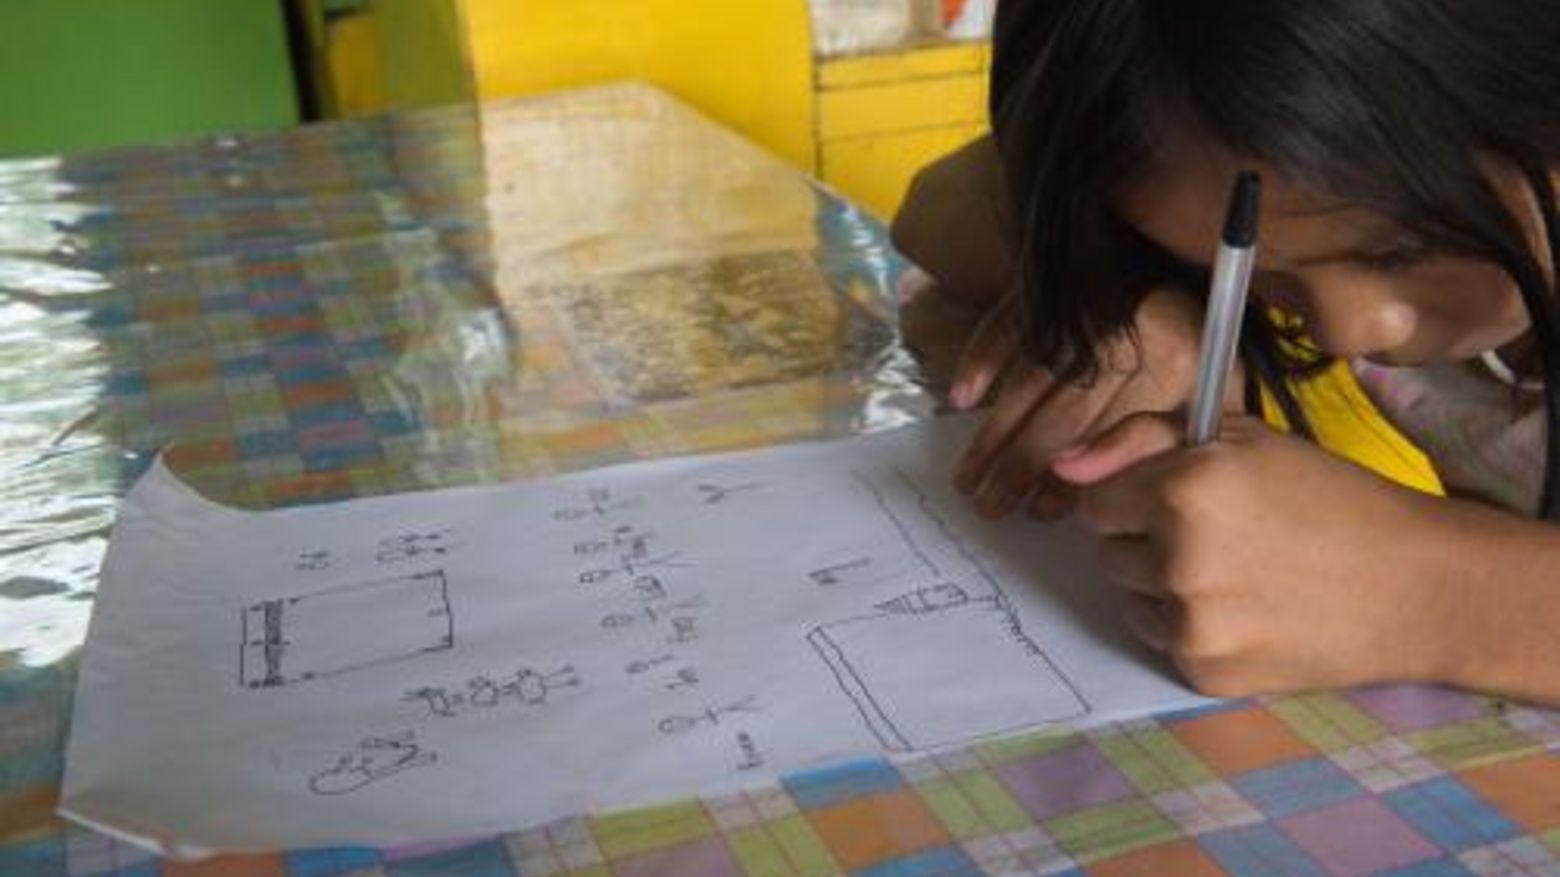 Rowena Pama (11) geht in die vierte Grundschulklasse. Jedoch nicht jeden Tag: Manchmal muss sie zu Hause bleiben, um ihrer Mutter zu helfen. Die Corona-Pandemie verhindert den Schulbesuch. Mädchen sind besonders betroffen. Das Foto zeigt Rowena beim Malen eines Bildes.